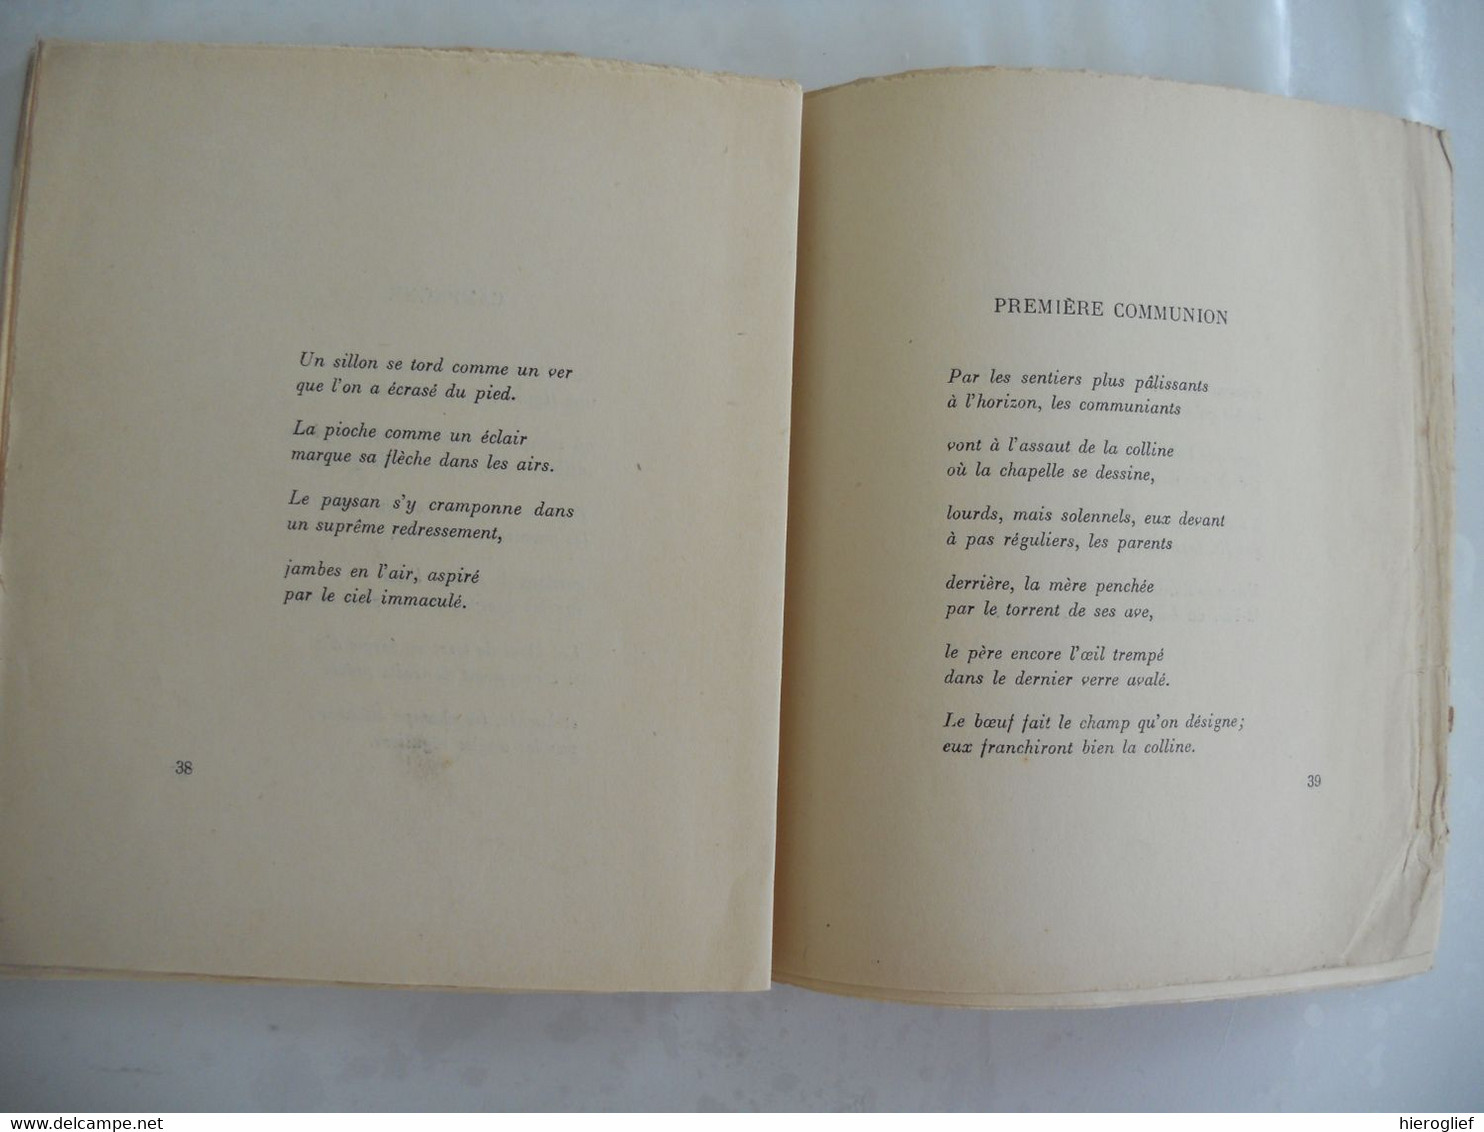 HARMONICA  par Jean Teugels / 1923 poète poèmes bruxelles éd de la jeunesse nouvelle dewit